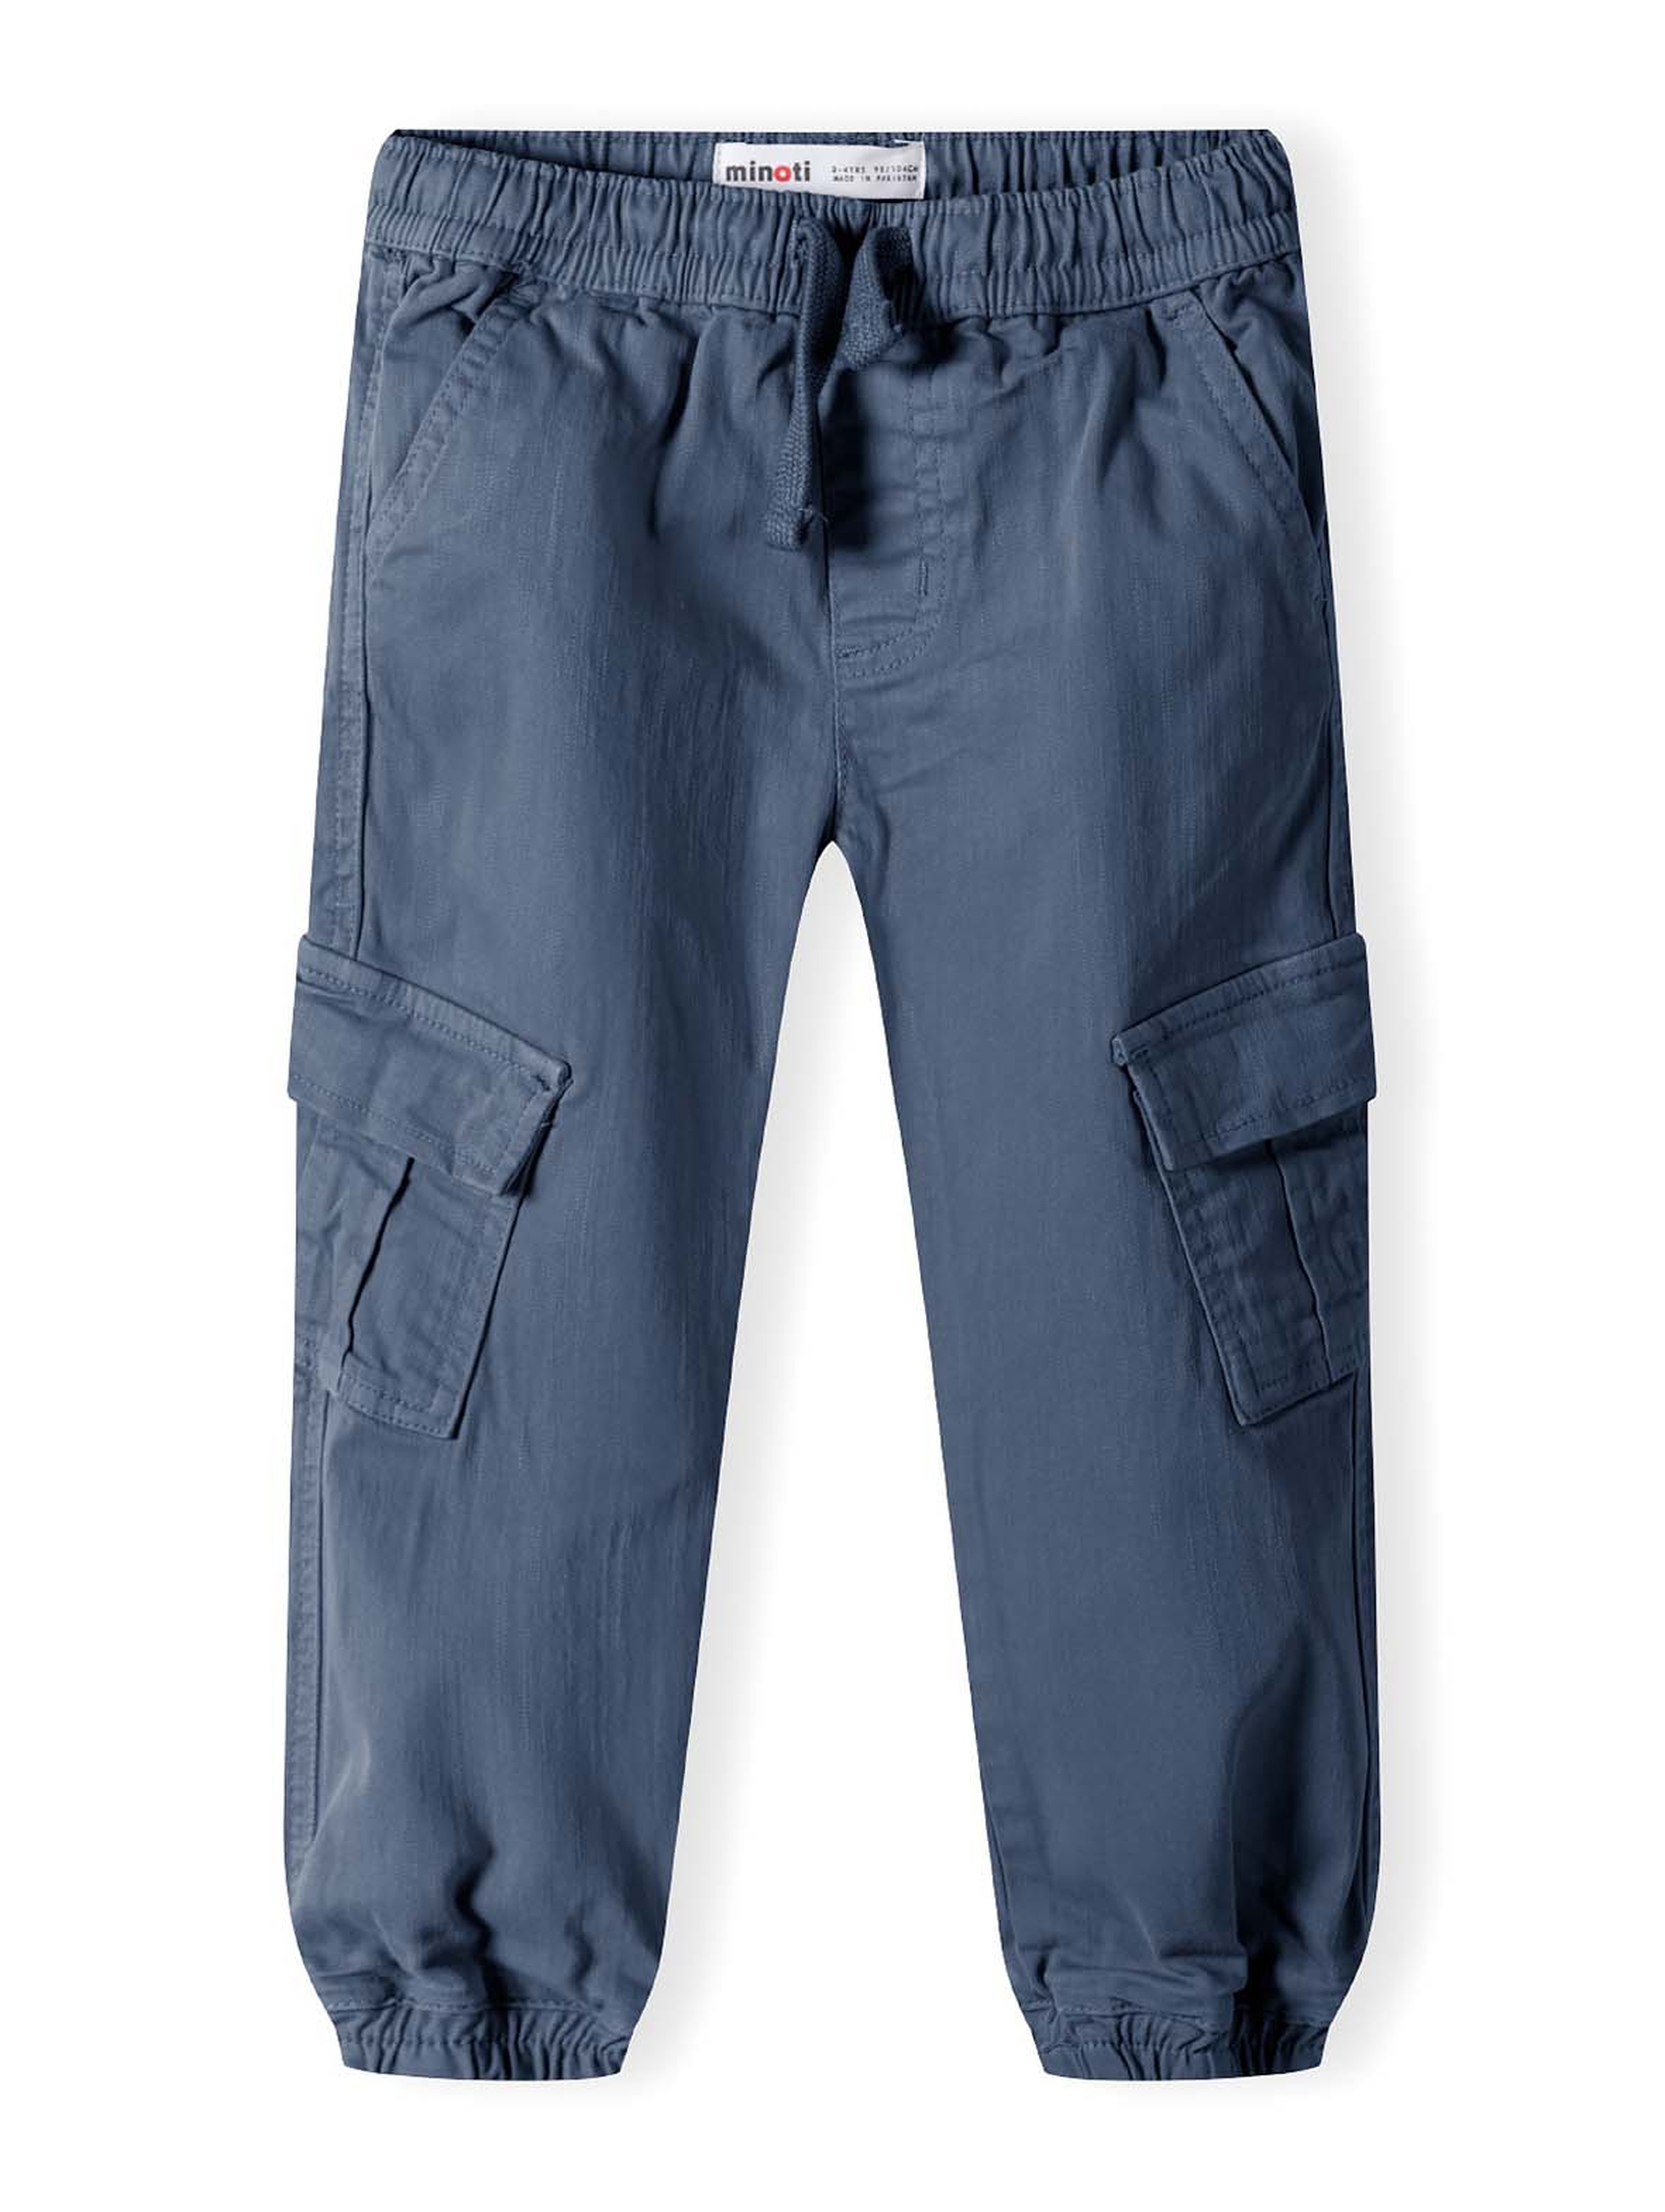 Spodnie niebieskie typu bojówki dla chłopca